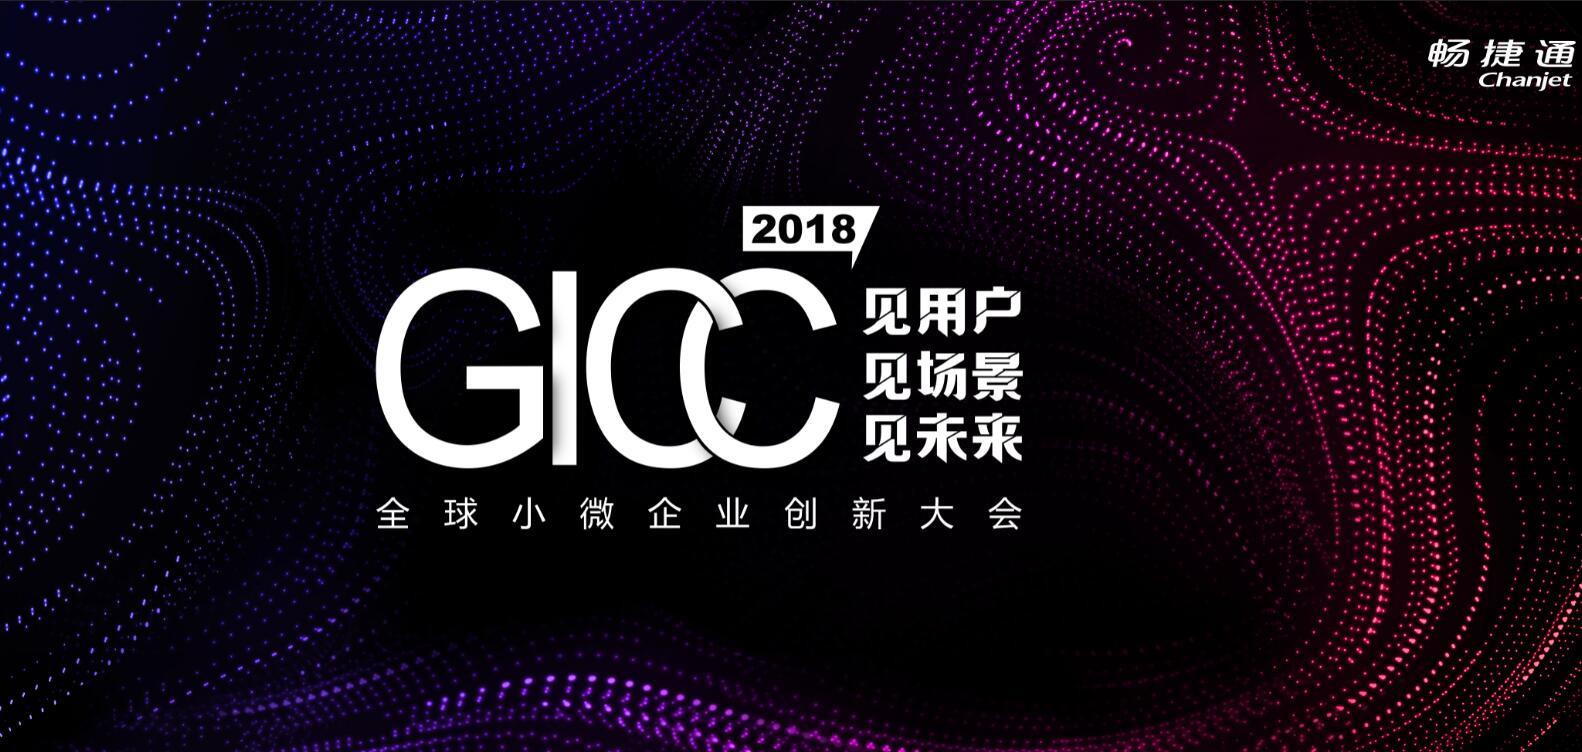 GICC 2018全球小微企业创新大会